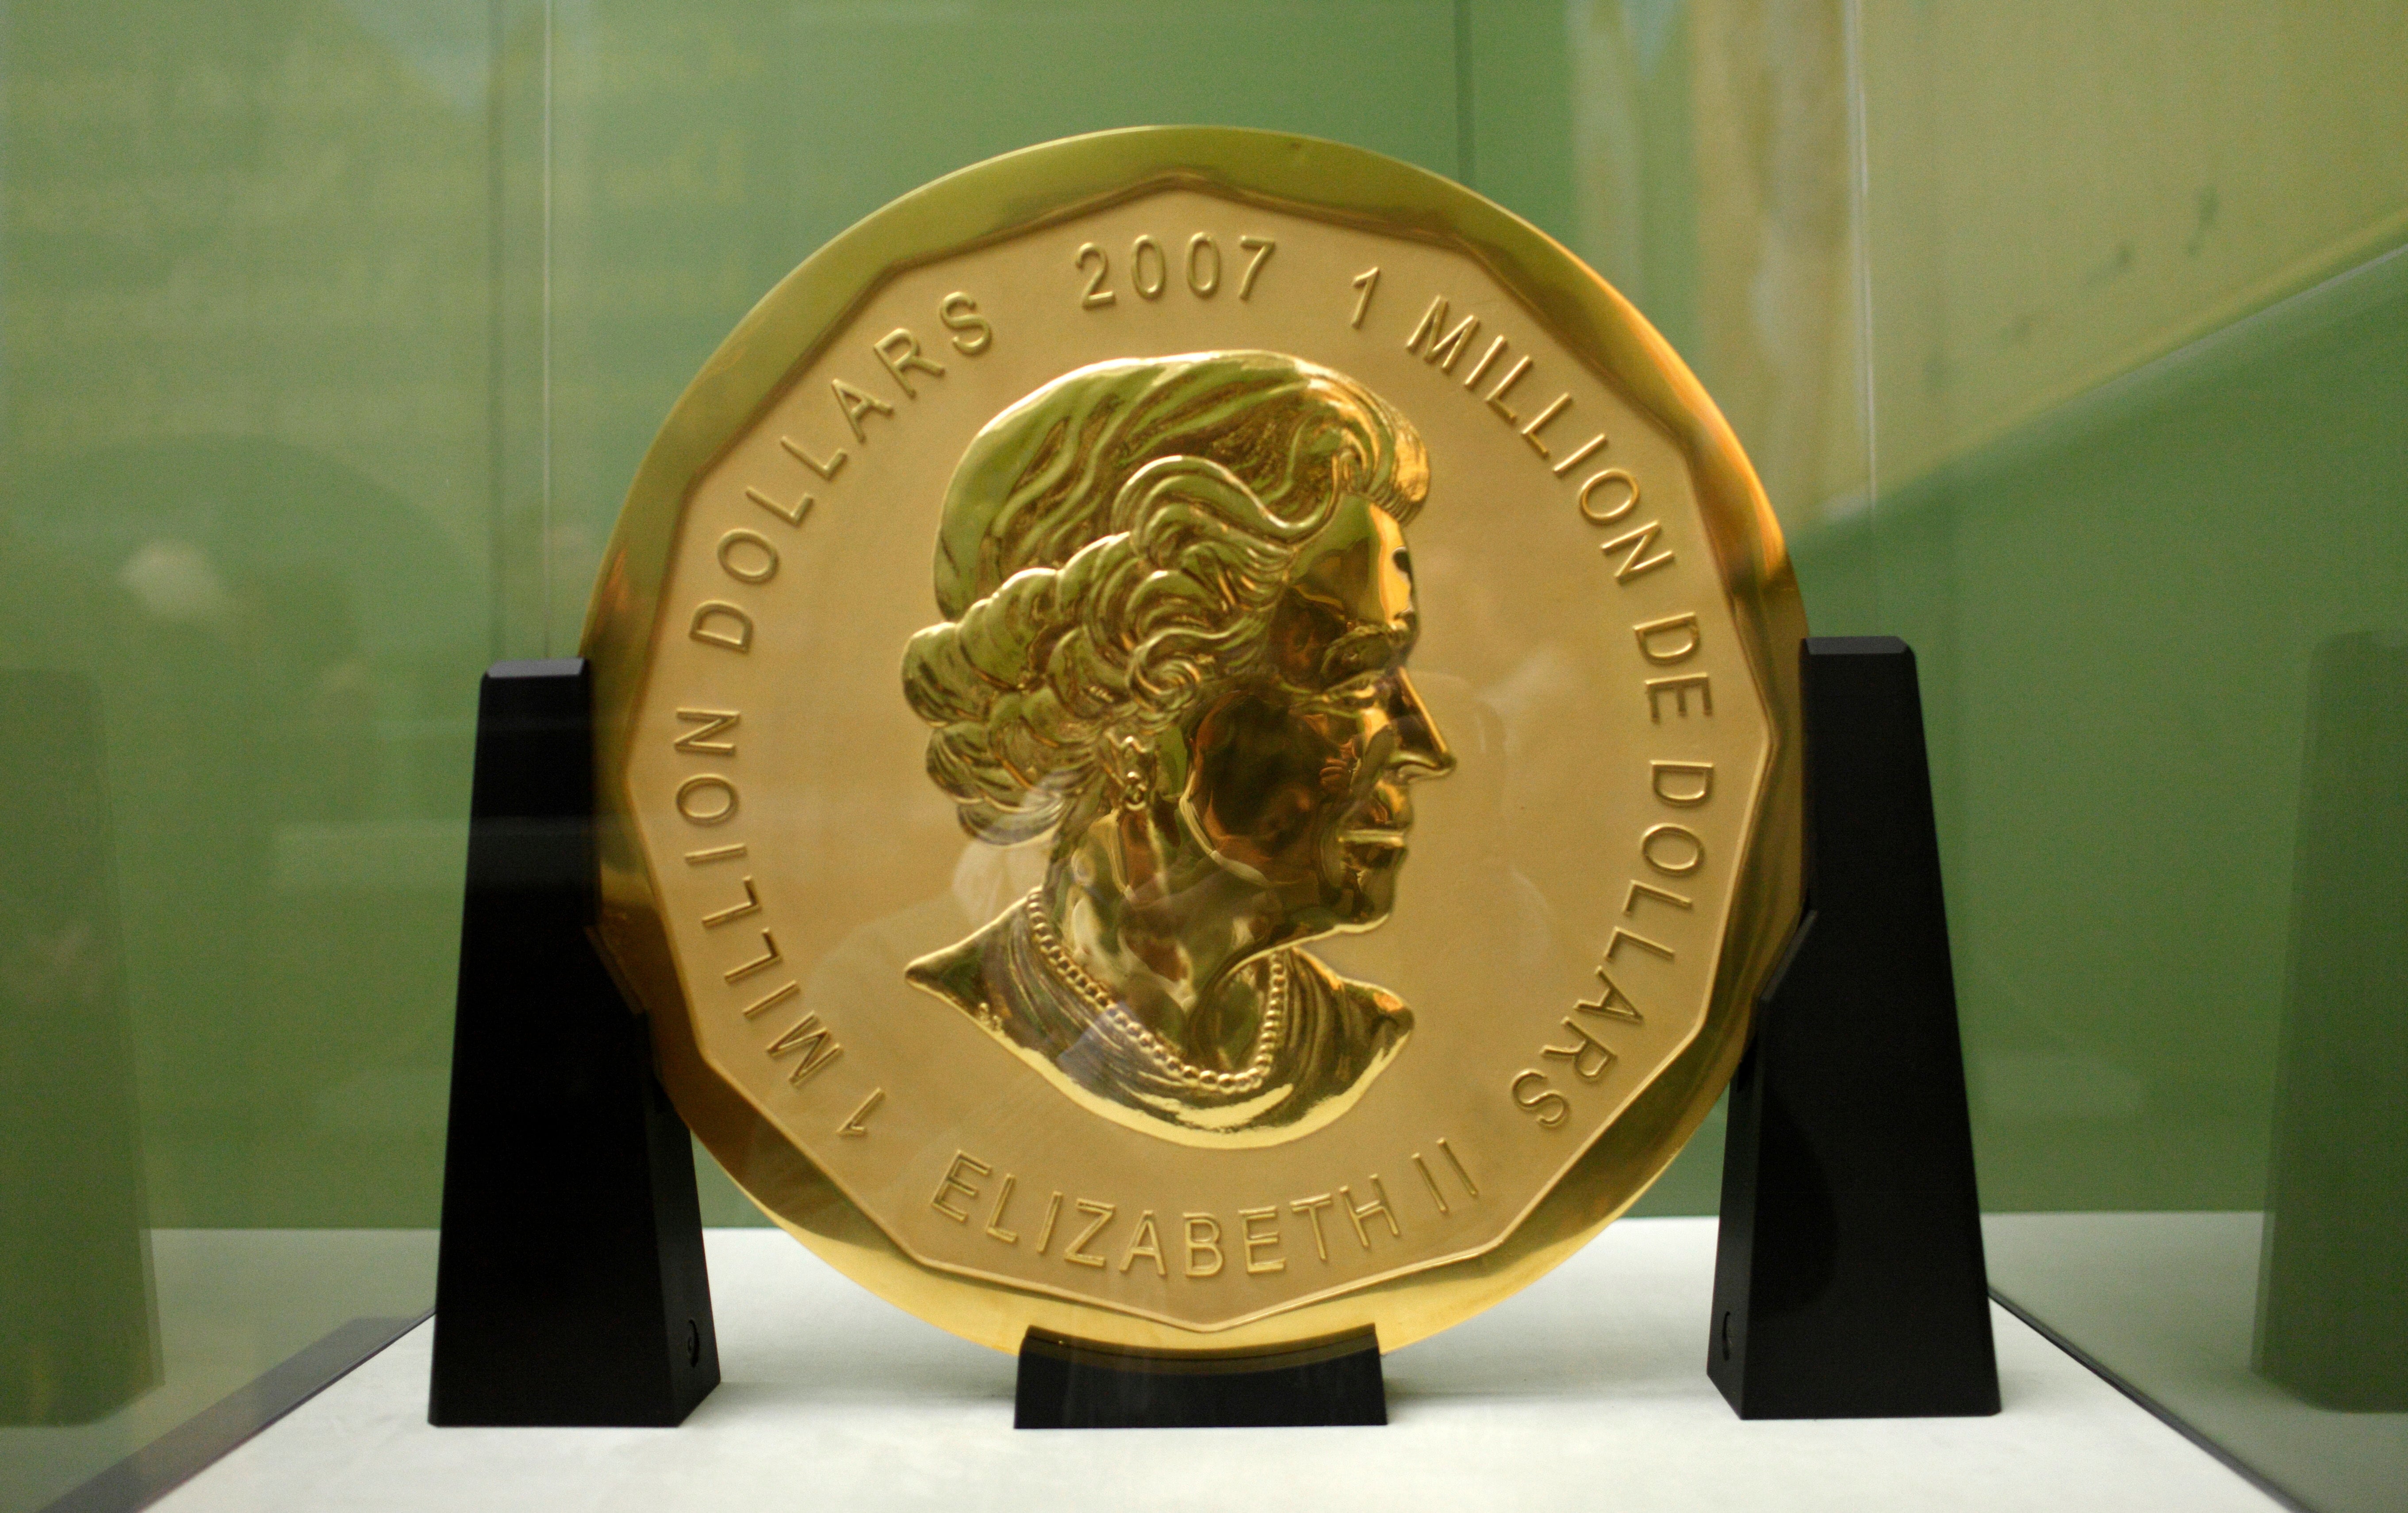 ARCHIVO -- La foto del 8 de diciembre de 2010 muestra una moneda de oro canadiense de 100 kilos exhibida en el museo Bode de Berlín, Alemania. &nbsp;La policía berlinesa allanó varias viviendas y joyerías el miércoles 16 de diciembre de 2020 bajo sospecha de que estuvieran vinculadas con el robo de la moneda en 2017.&nbsp;